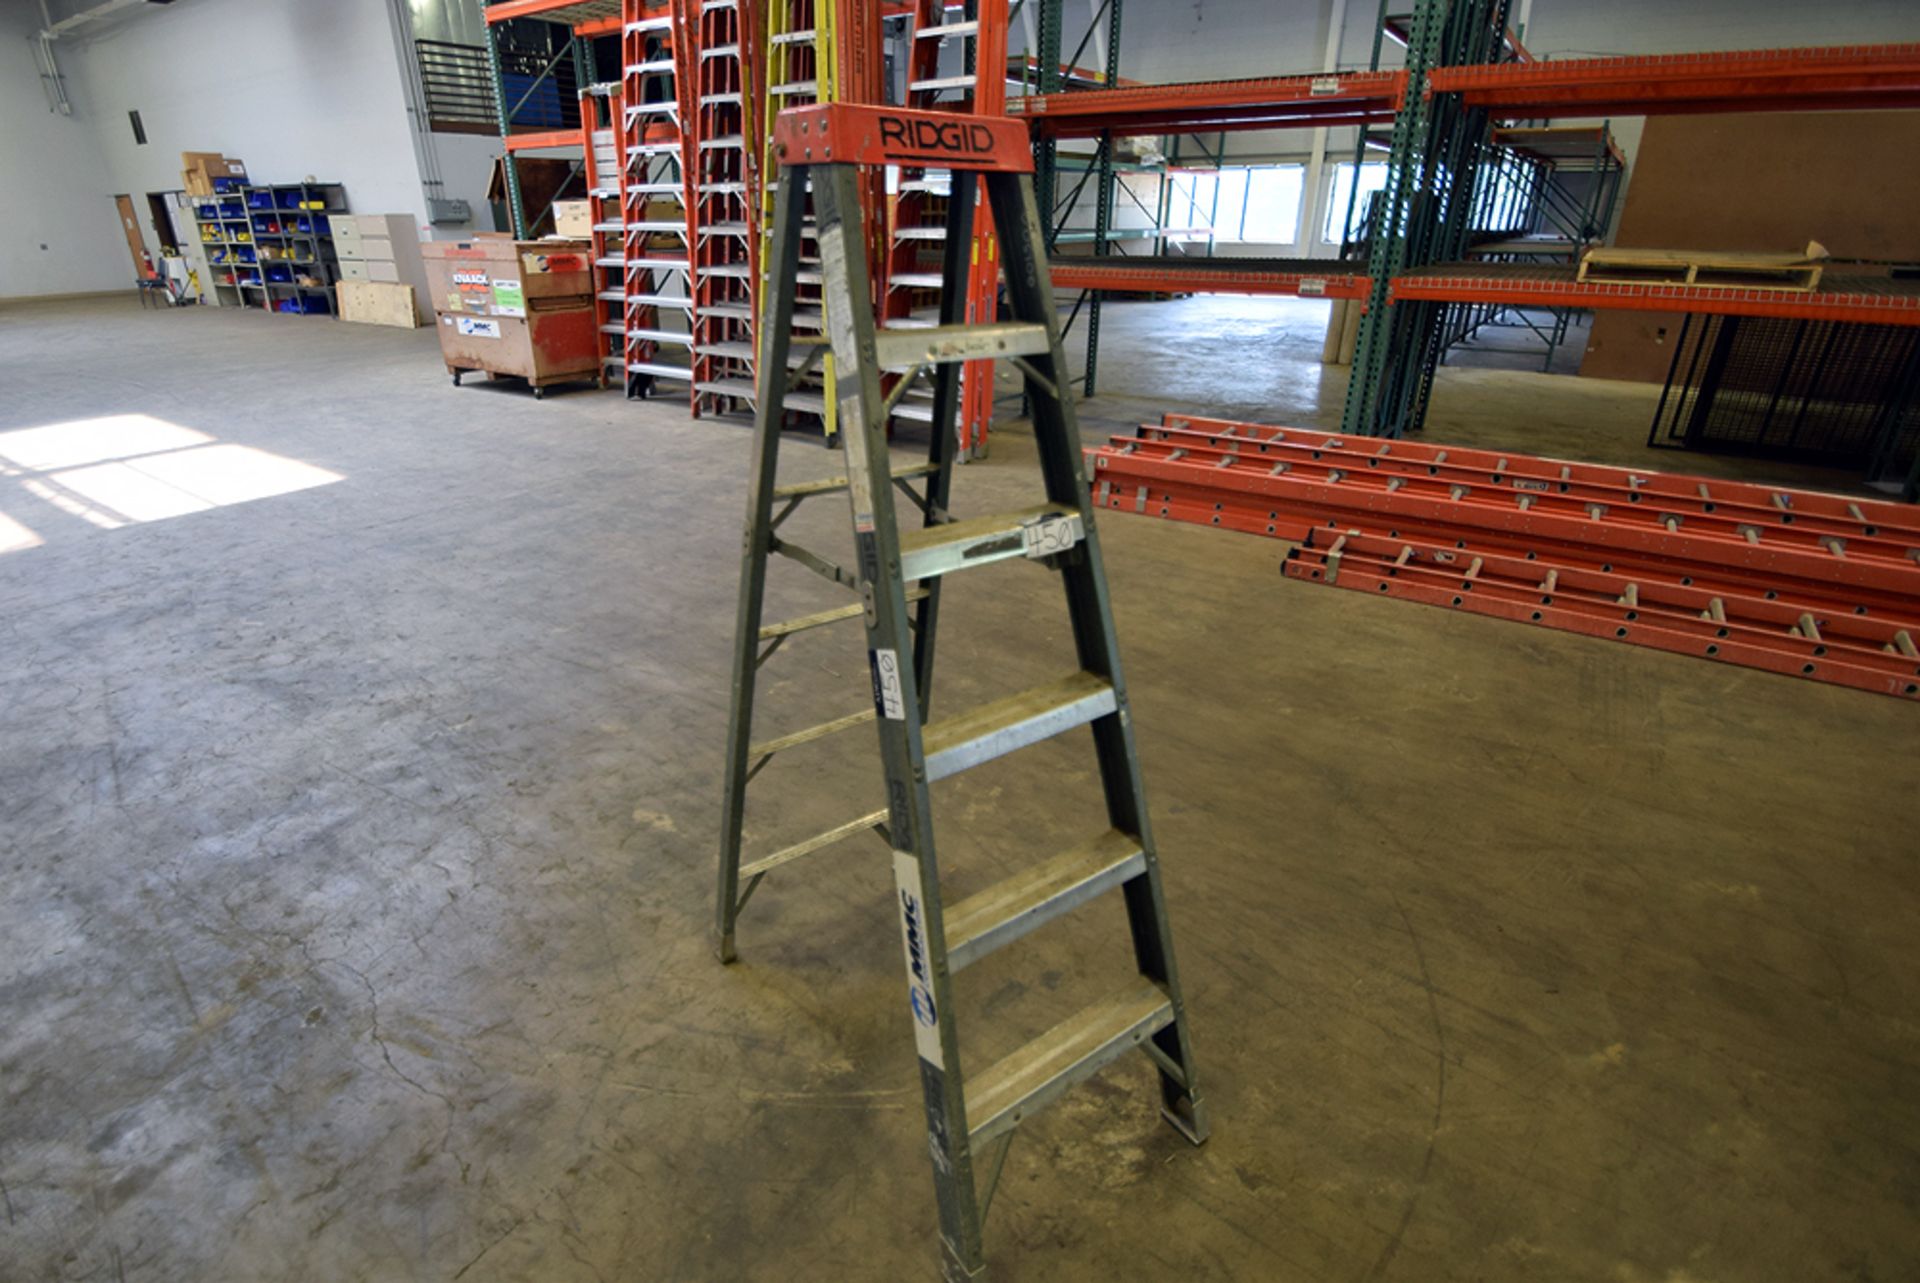 Ridgid 6' Fiberglass Ladder